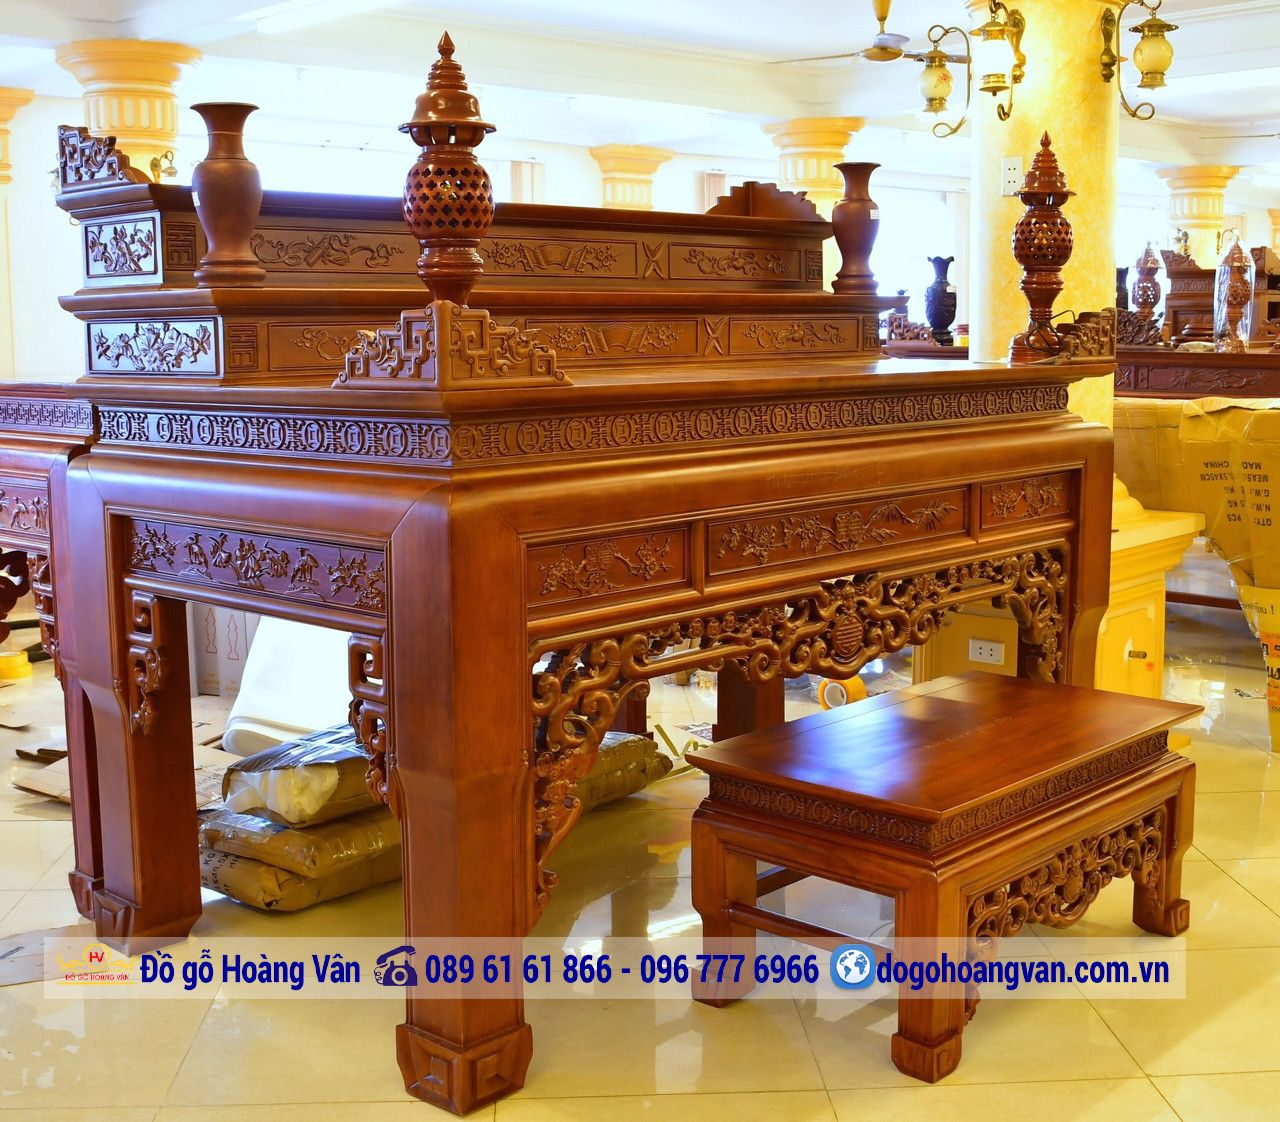 Top 50 mẫu bàn thờ gỗ hương đẹp sang trọng nhất